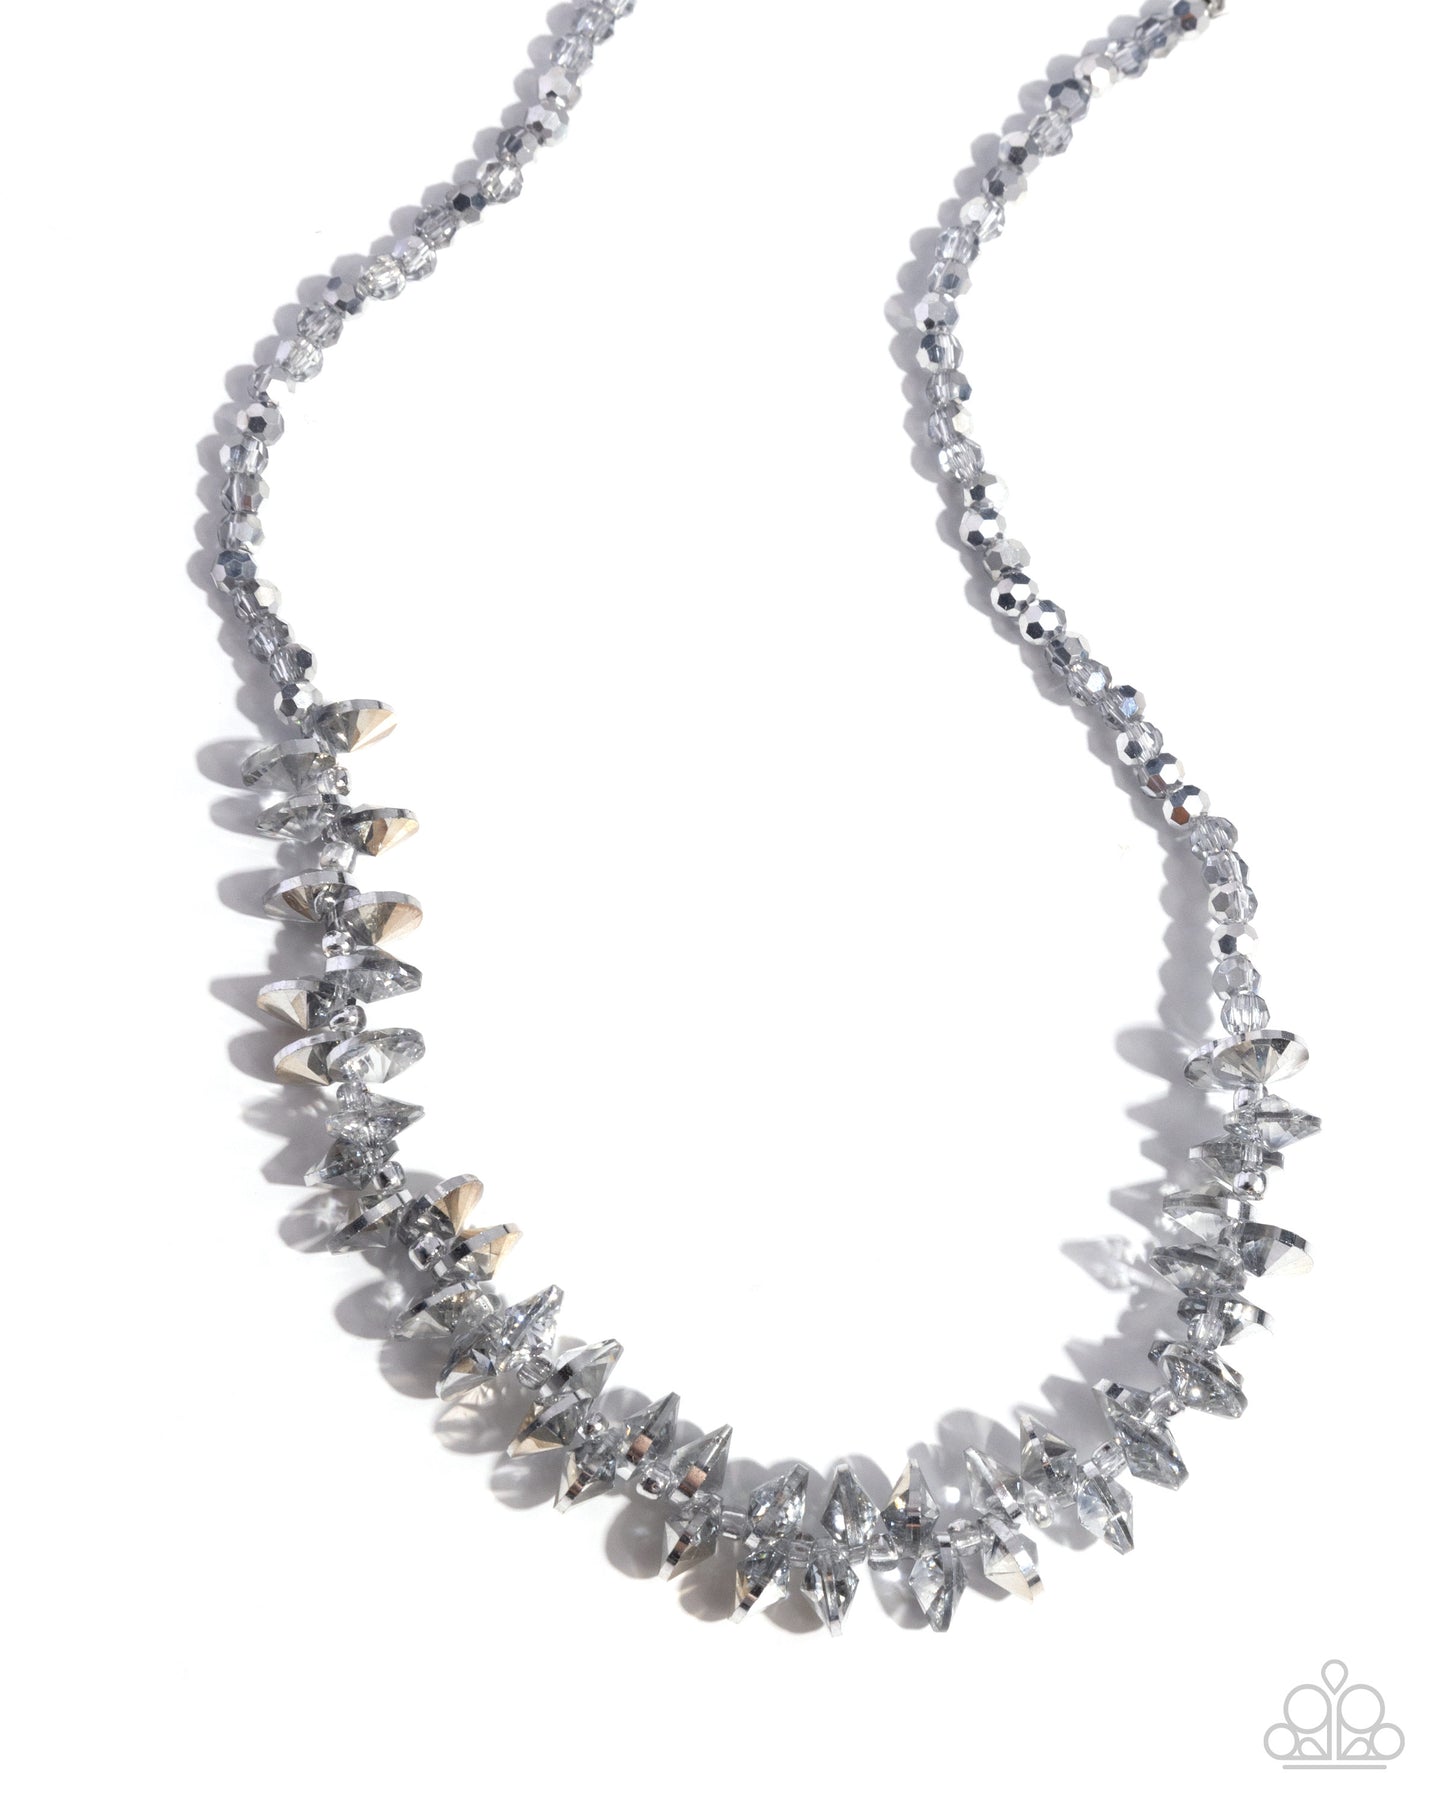 Paparazzi - Flickering Fashion - Silver Necklace